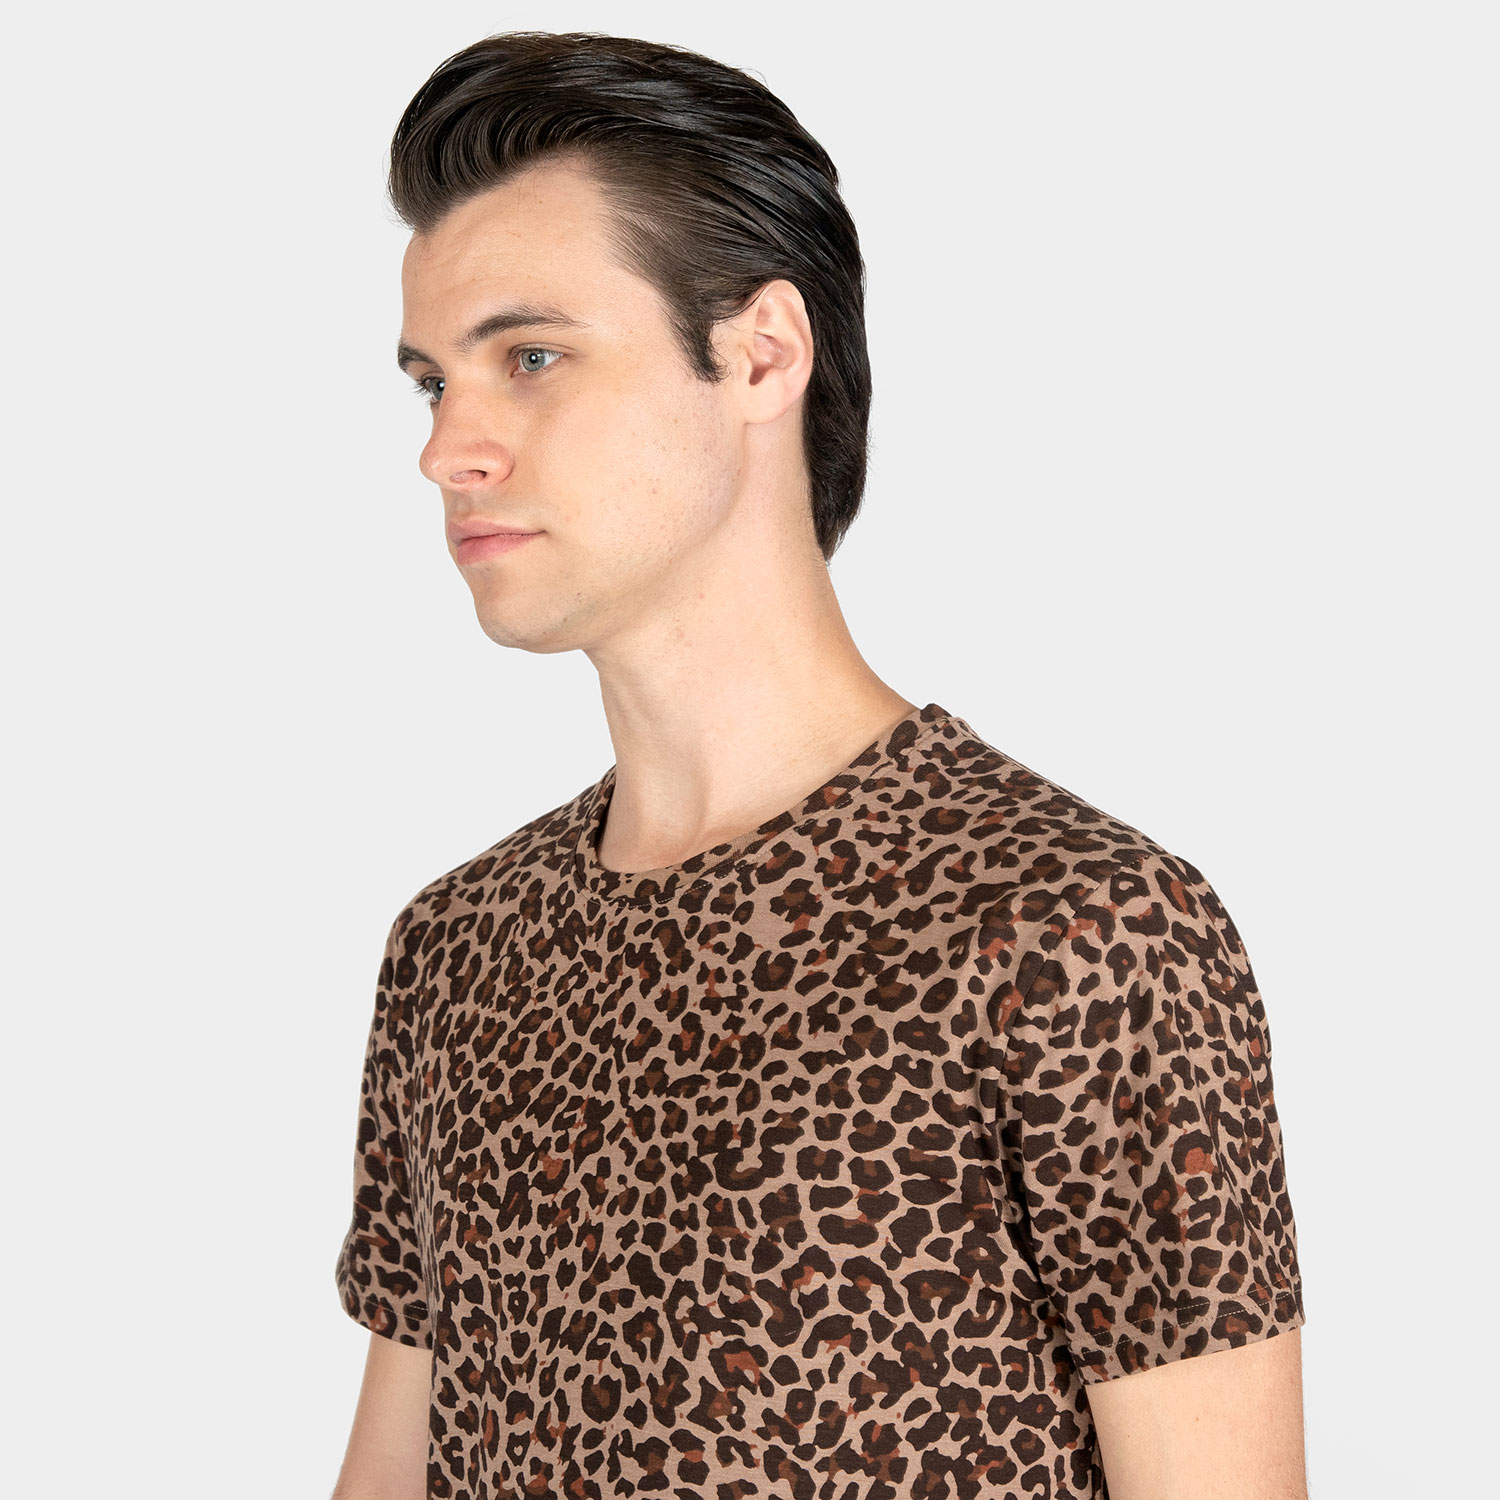 Jax - Leopard Print T-Shirt (Size XS, S, M, L, XL, 2XL, 3XL) | Straight ...